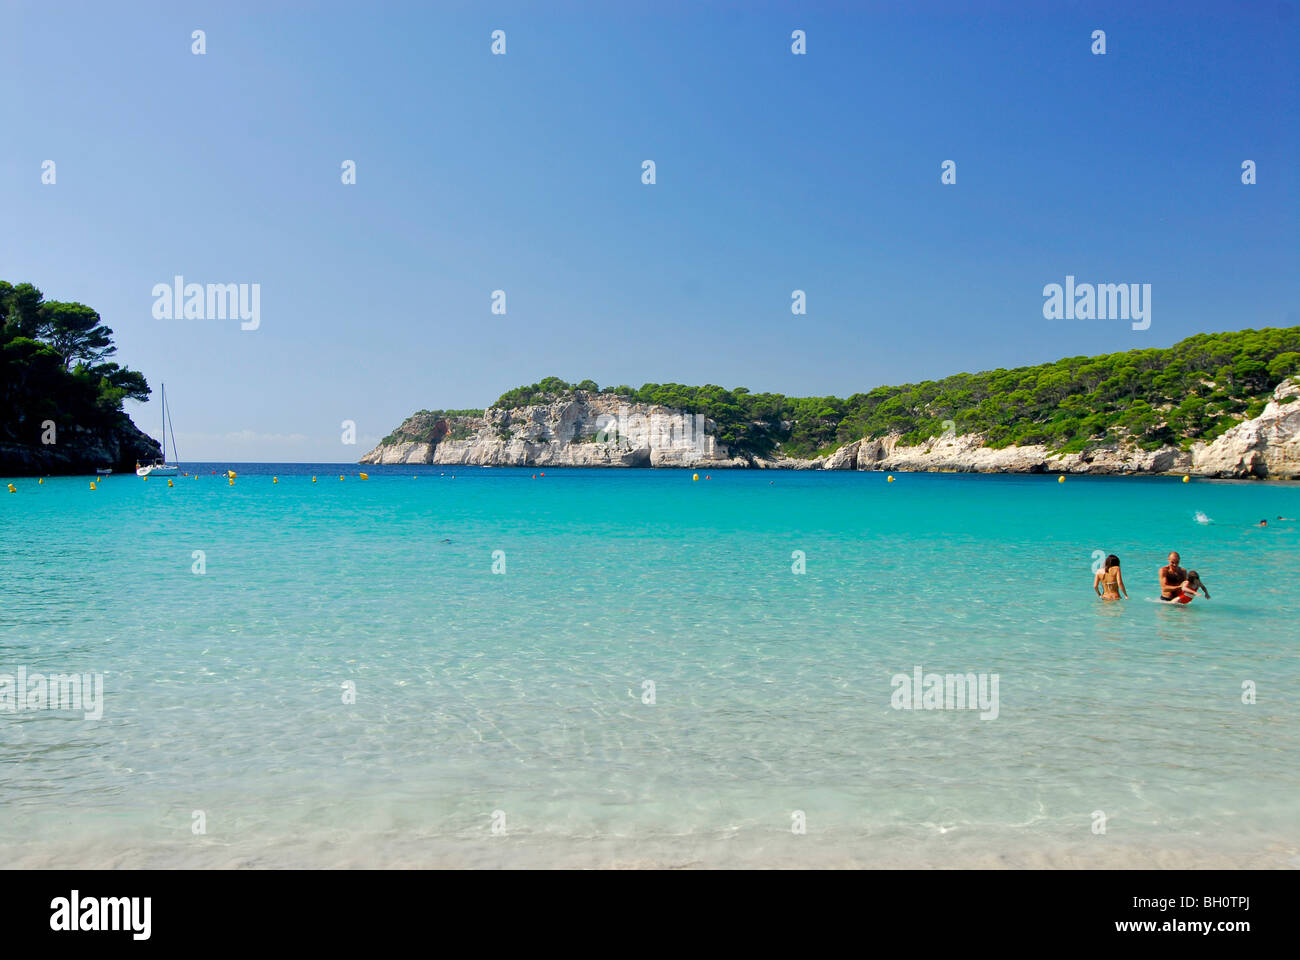 Menschen, die Schwimmen im Meer, Sandstrand und türkisblauem Meer in Cala Galdana, Menorca, Balearen, Spanien Stockfoto